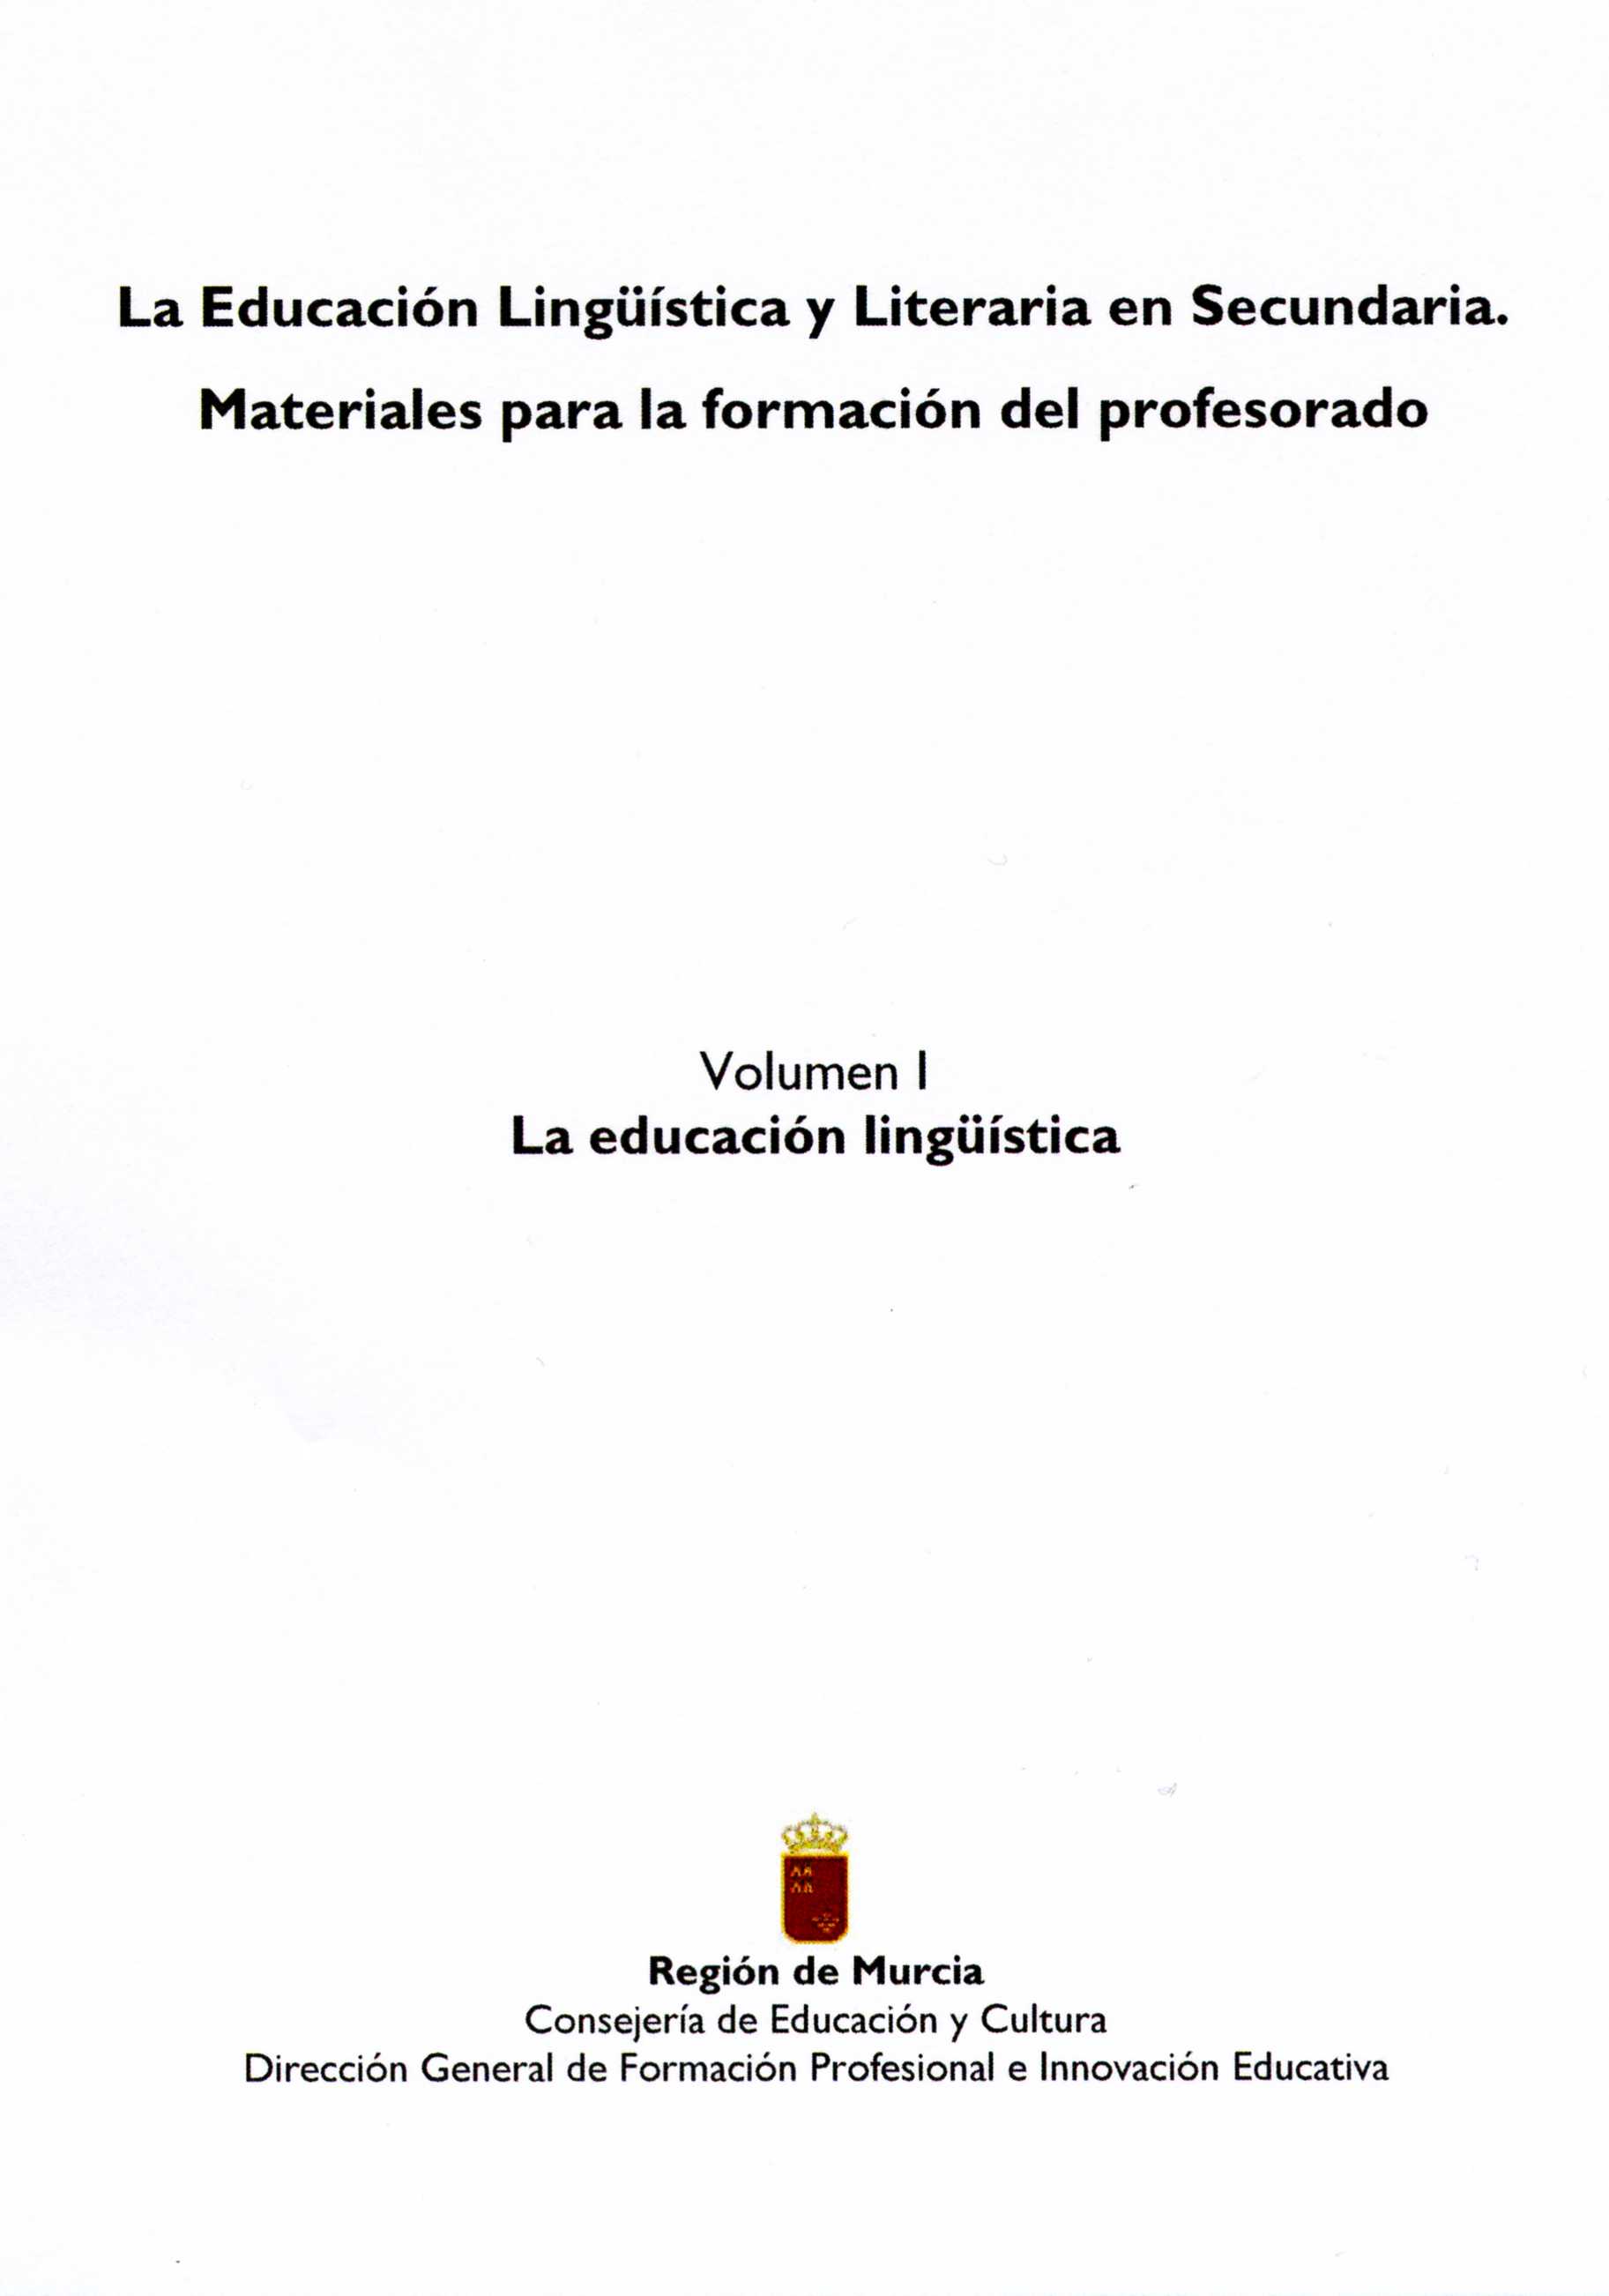 Portada de "La educación lingüística y literaria en secundaria : materiales para la formación del profesorado. Vol. I. La educación lingüística"